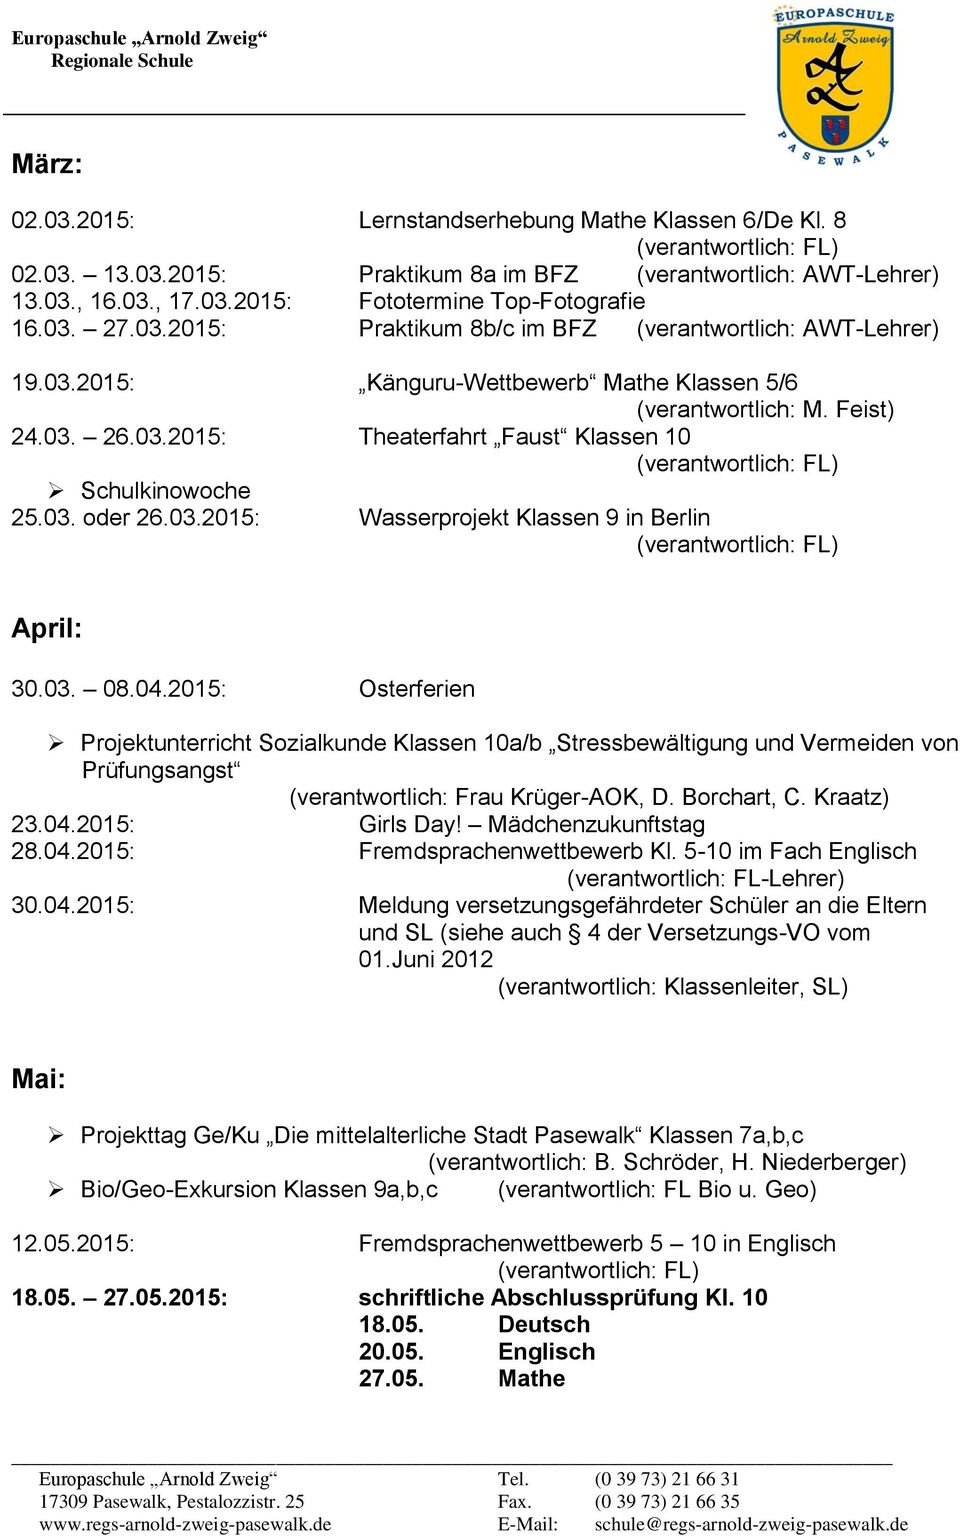 2015: Osterferien Projektunterricht Sozialkunde Klassen 10a/b Stressbewältigung und Vermeiden von Prüfungsangst (verantwortlich: Frau Krüger-AOK, D. Borchart, C. Kraatz) 23.04.2015: Girls Day!